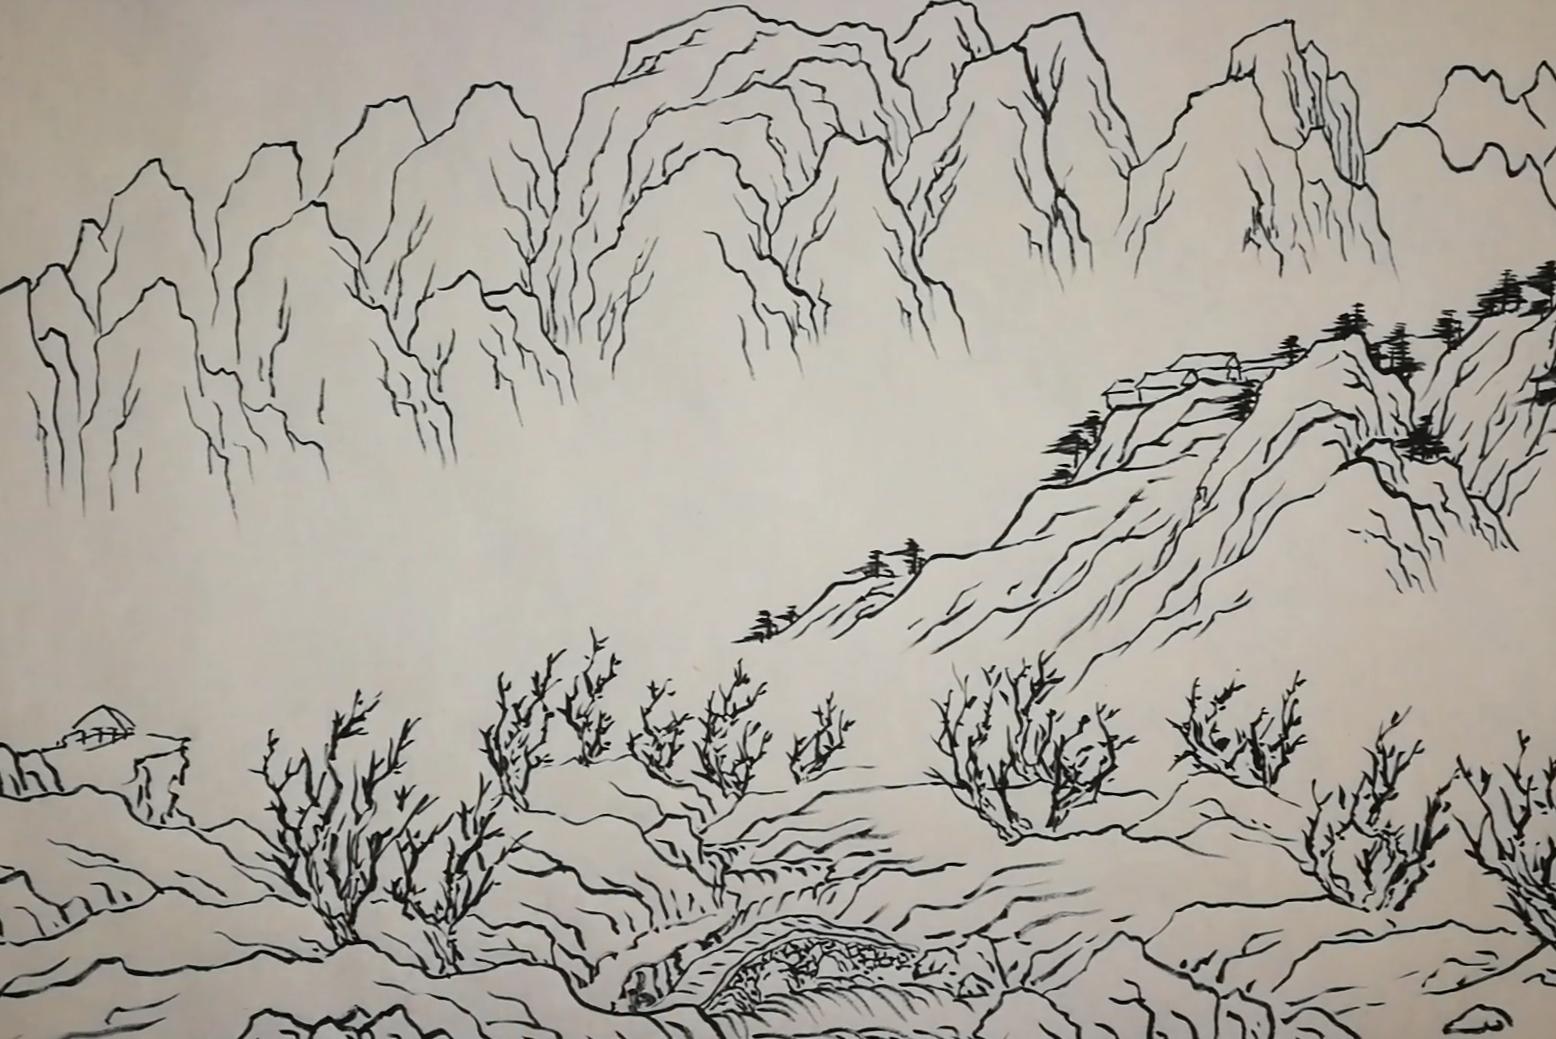 太行山|中国古版画名山胜景线描山水